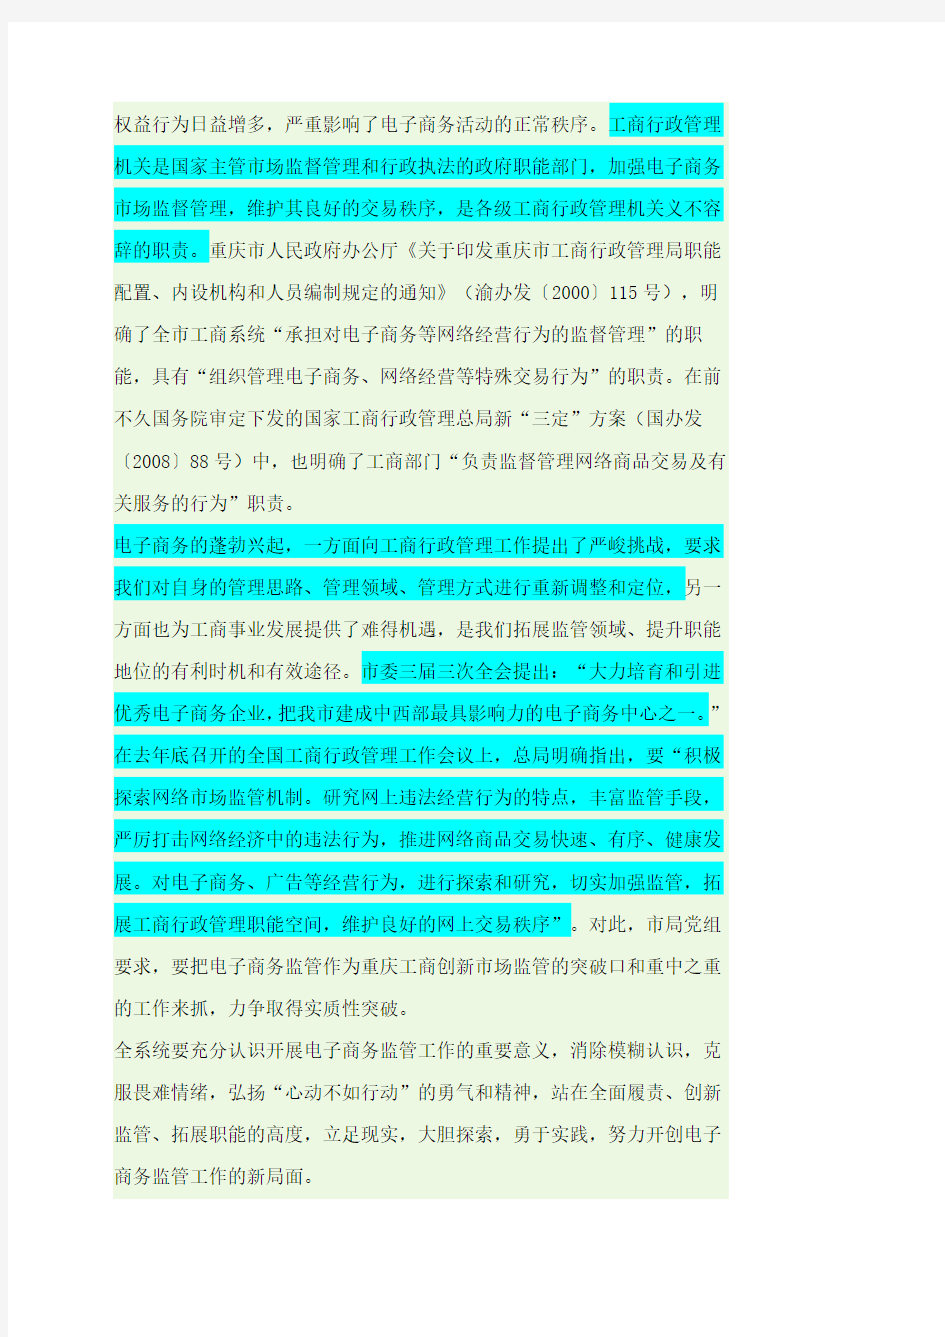 《重庆市工商行政管理局关于开展电子商务监管工作的试行意见》